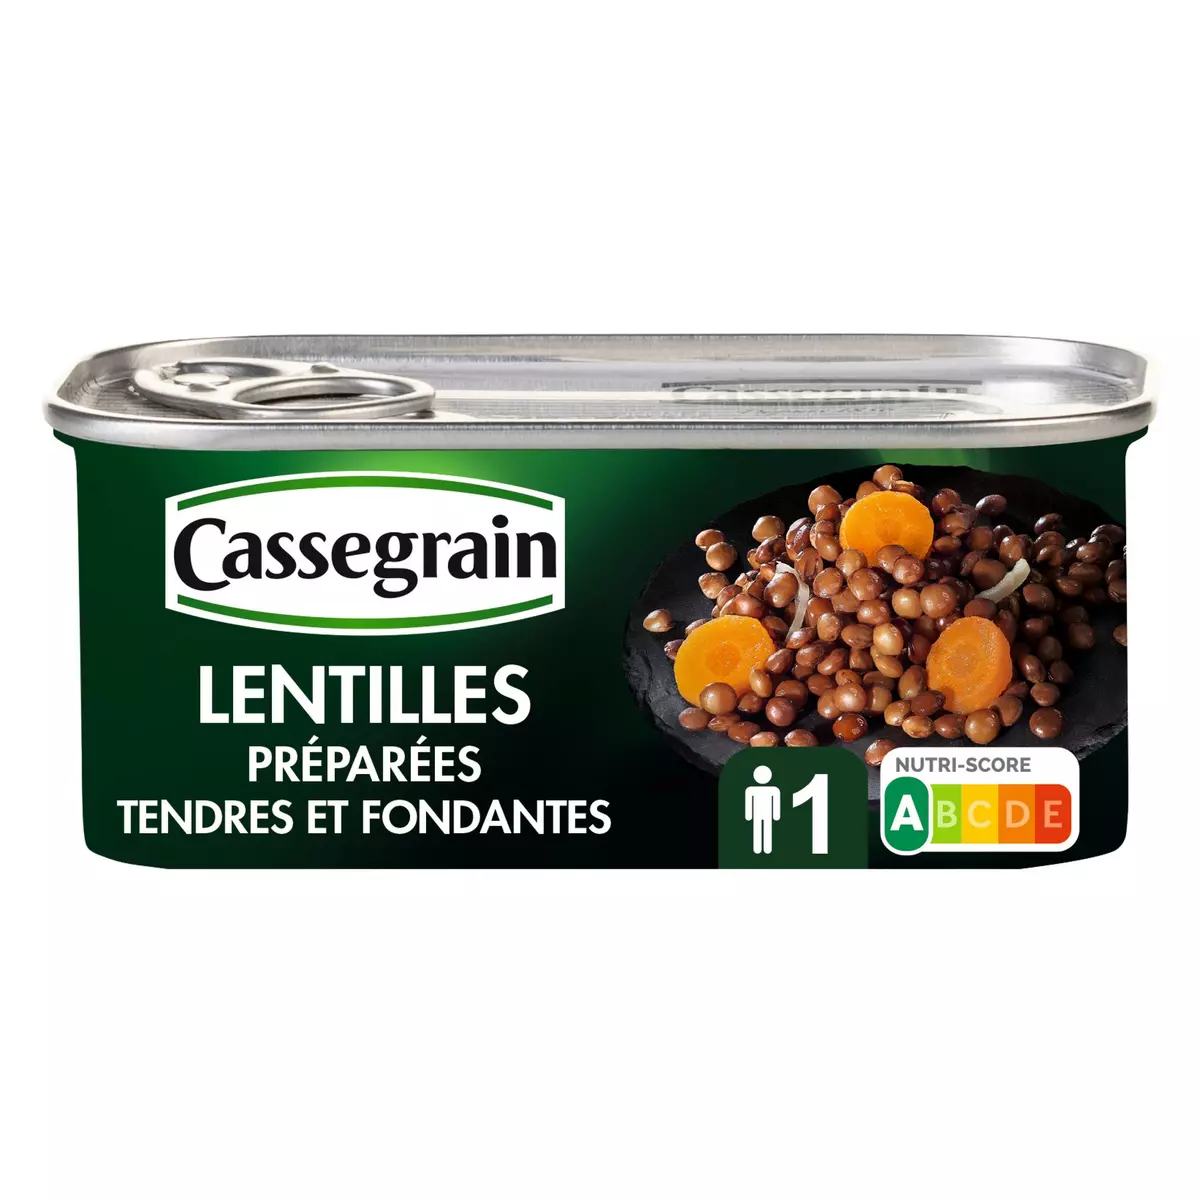 CASSEGRAIN Lentilles préparées tendres et fondantes 1 personne 130g